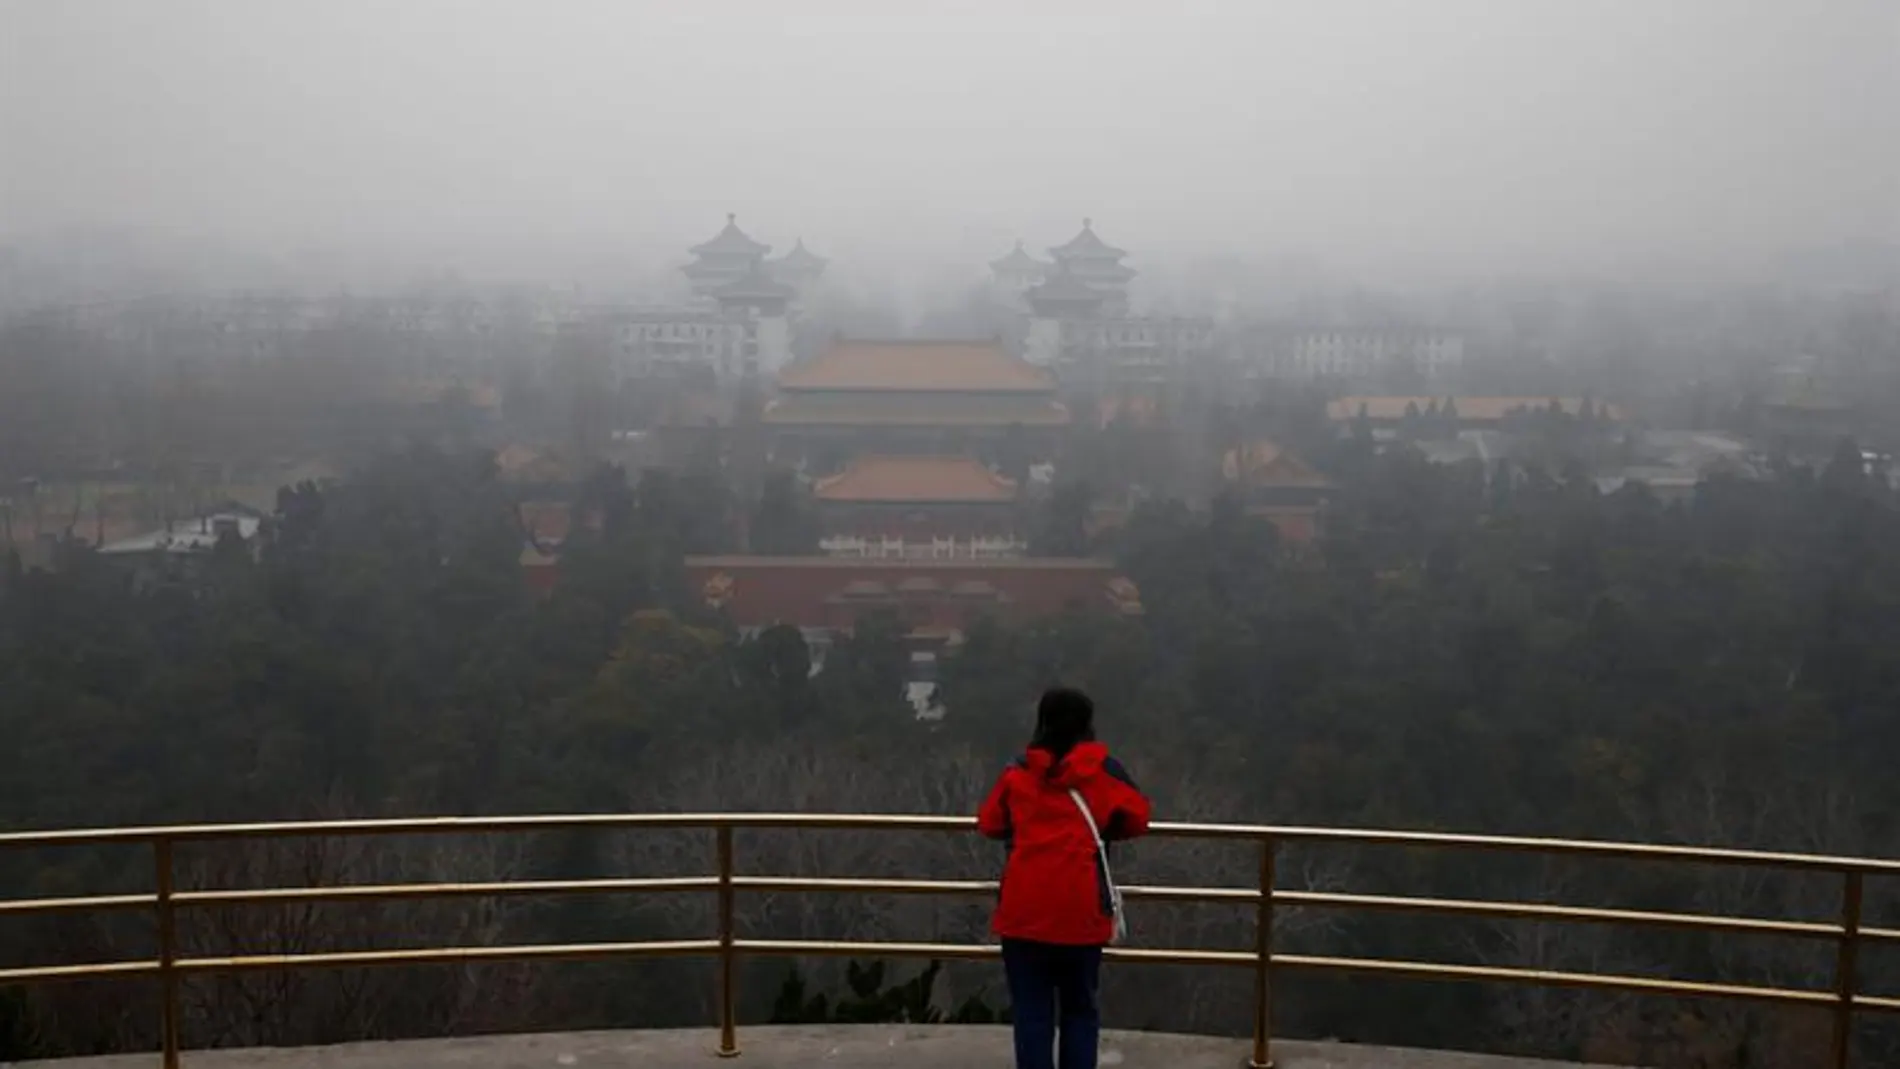 Una mujer observa el paisaje envuelto por una espesa niebla en Pekín